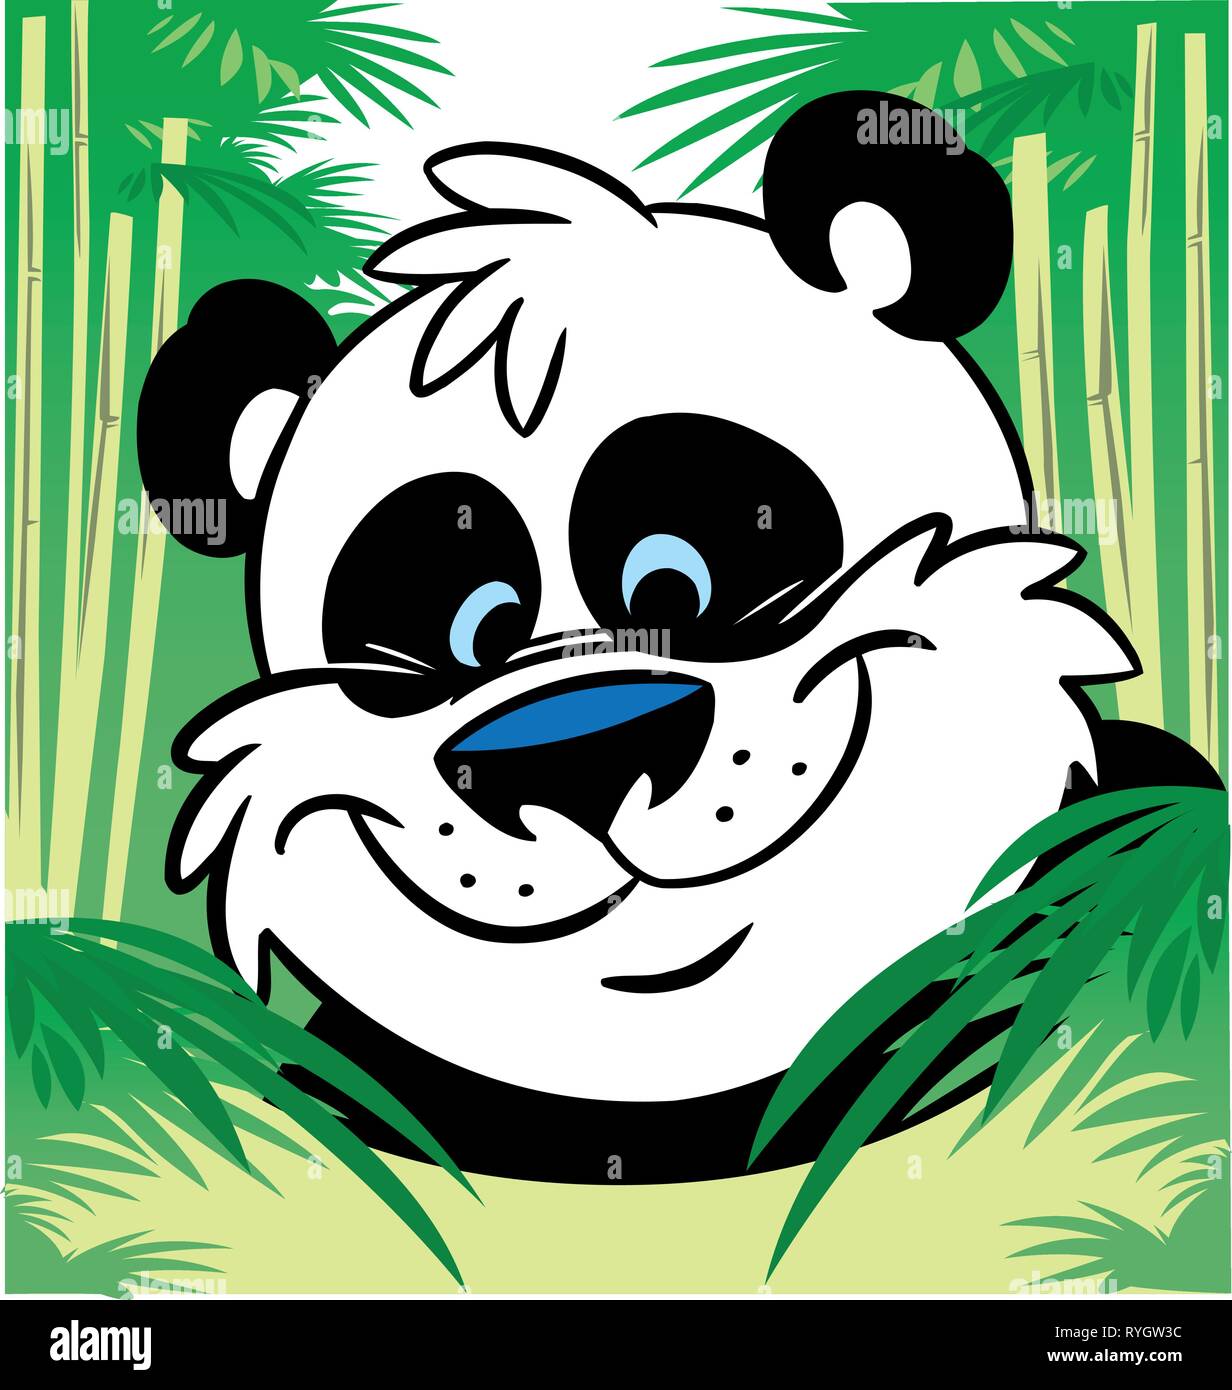 Cartoon panda hi-res stock photography and images - Alamy